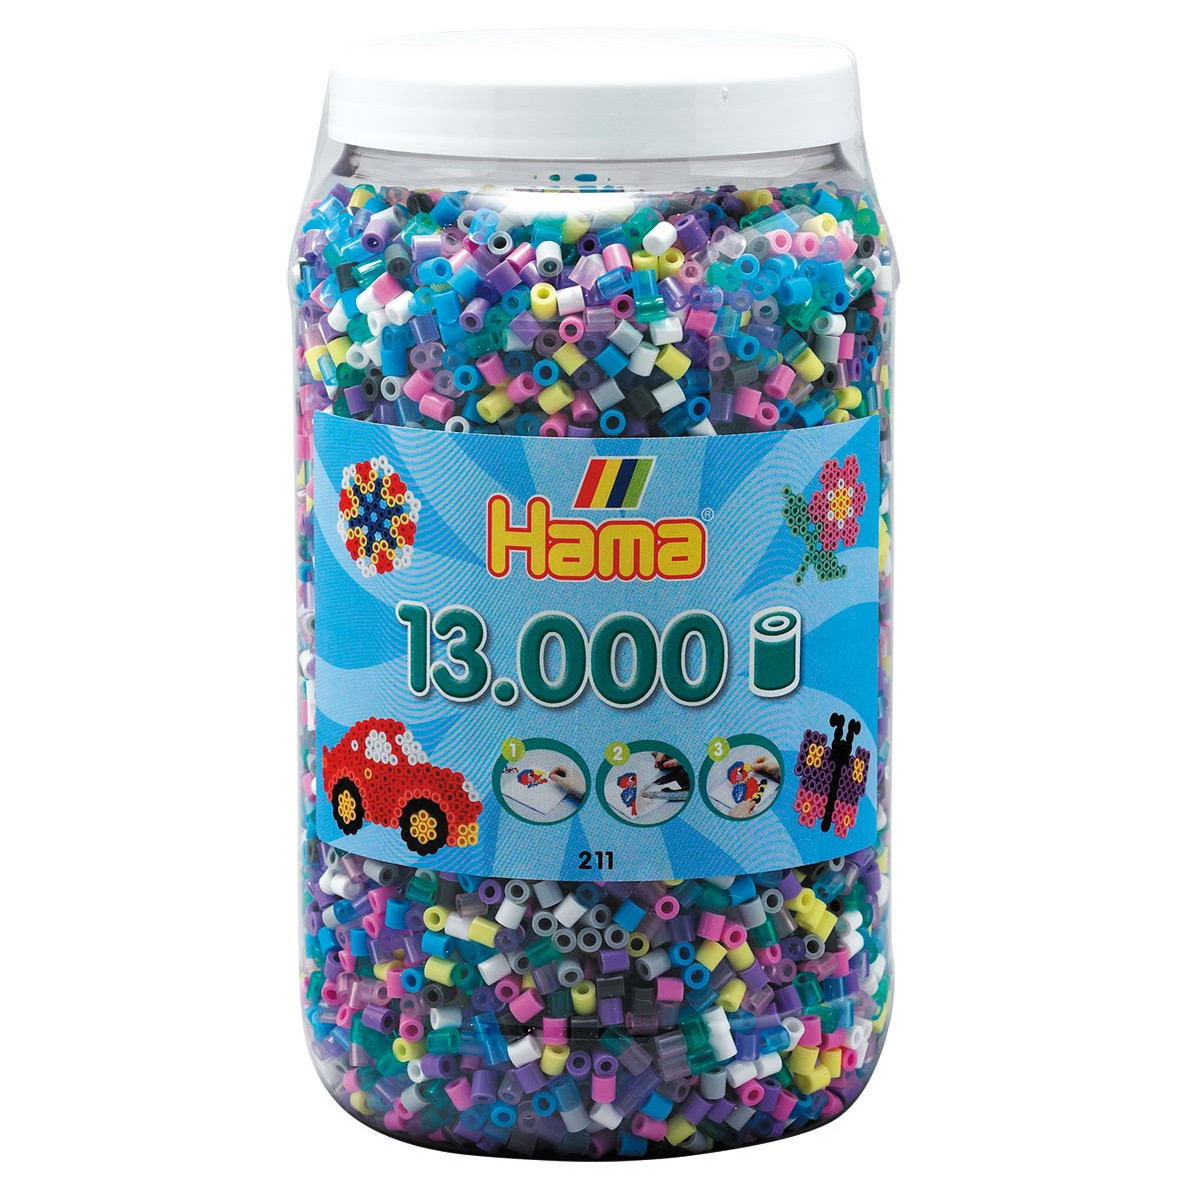 Hama 211-50 Tub 13000 Beads Mix 50 